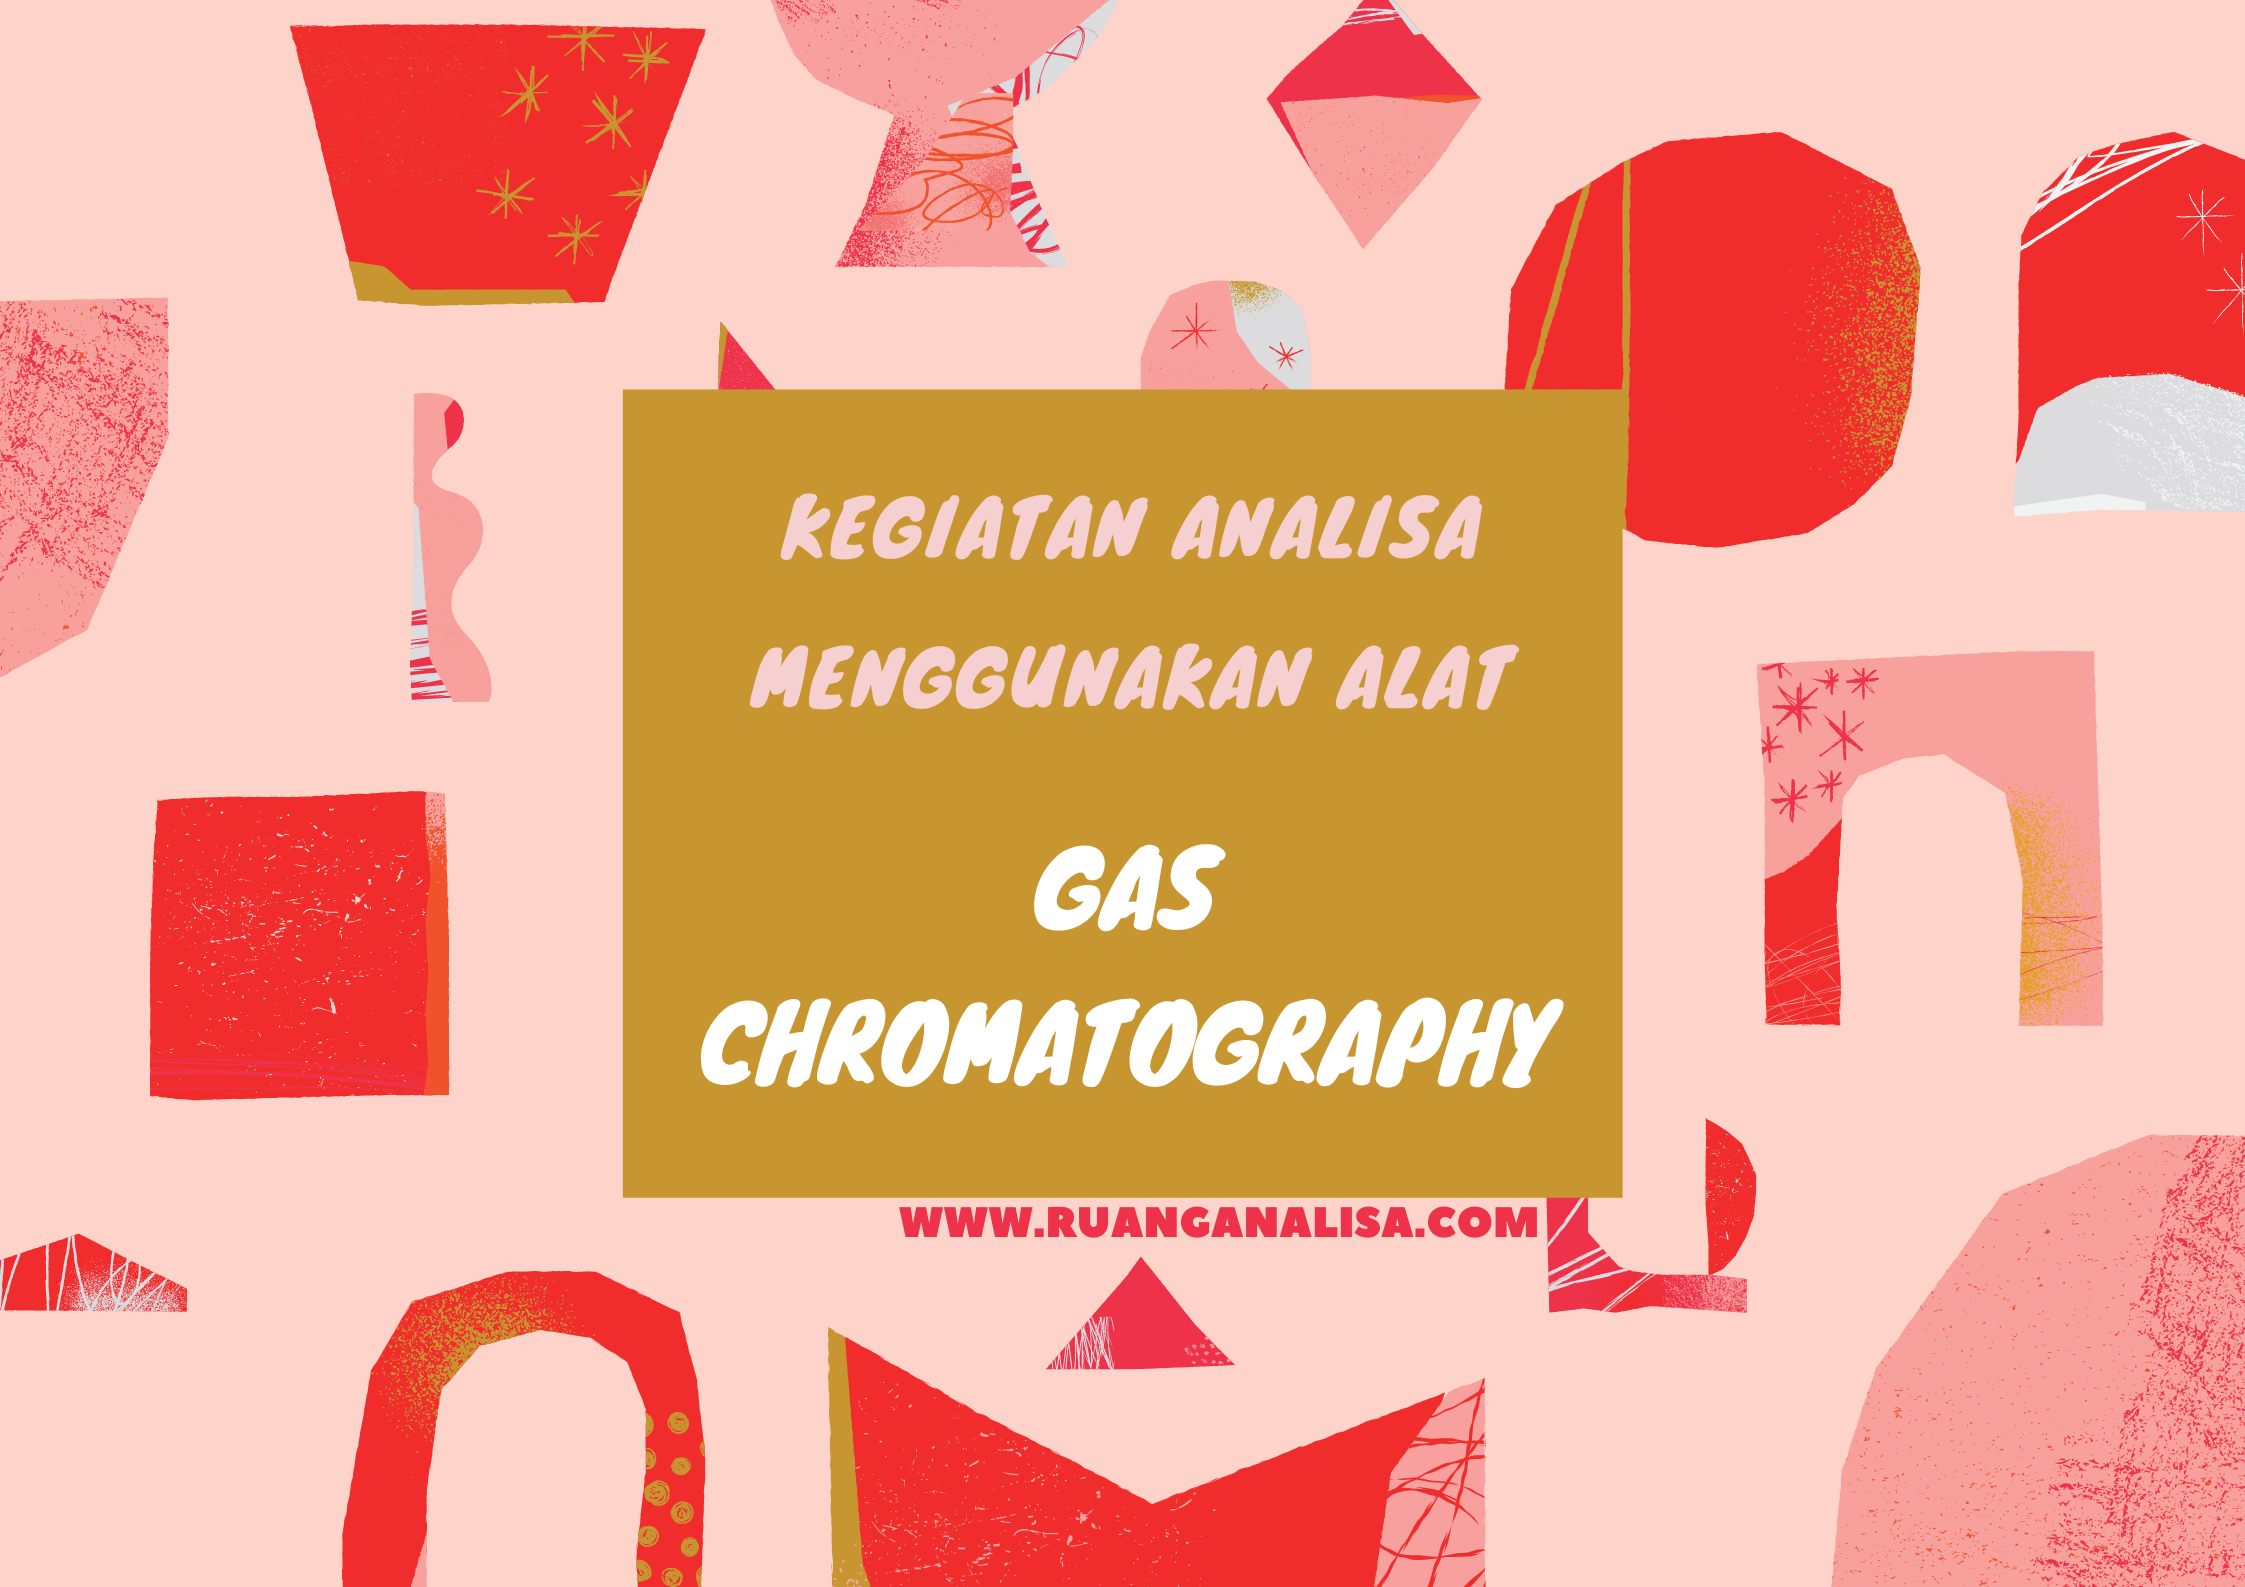 Gas adalah,Kromatografi Gas,Gas Chromatography adalah,Cara Pengujian,Analisa,Analisa Gas,